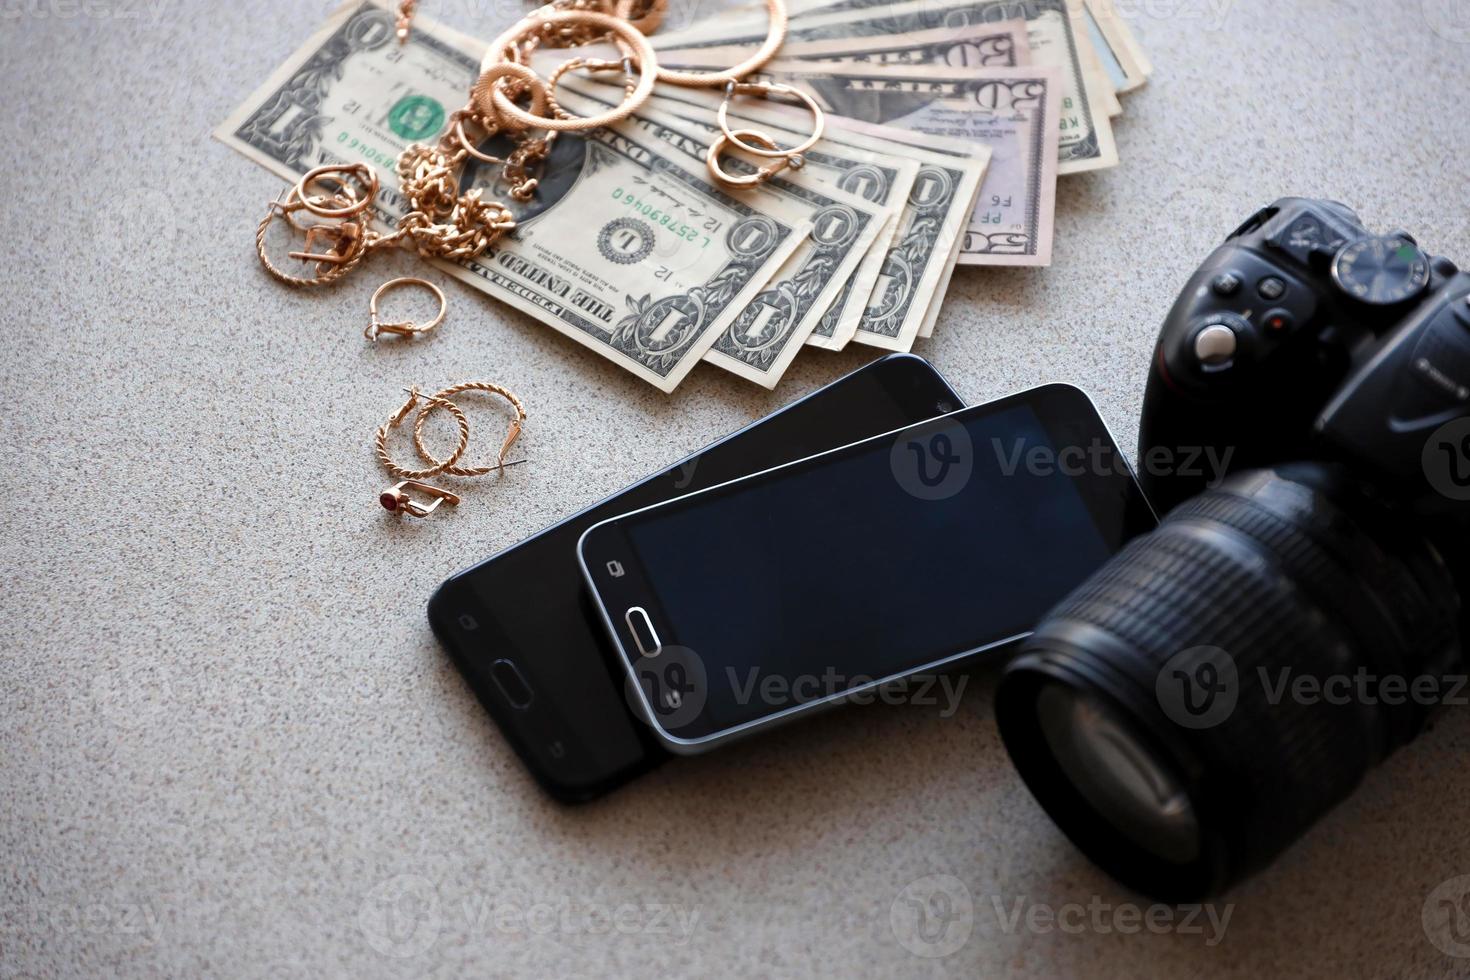 muitos anéis, brincos e colares dourados caros com grande quantidade de notas de dólar perto de smartphones e câmera digital slr. loja de penhores foto